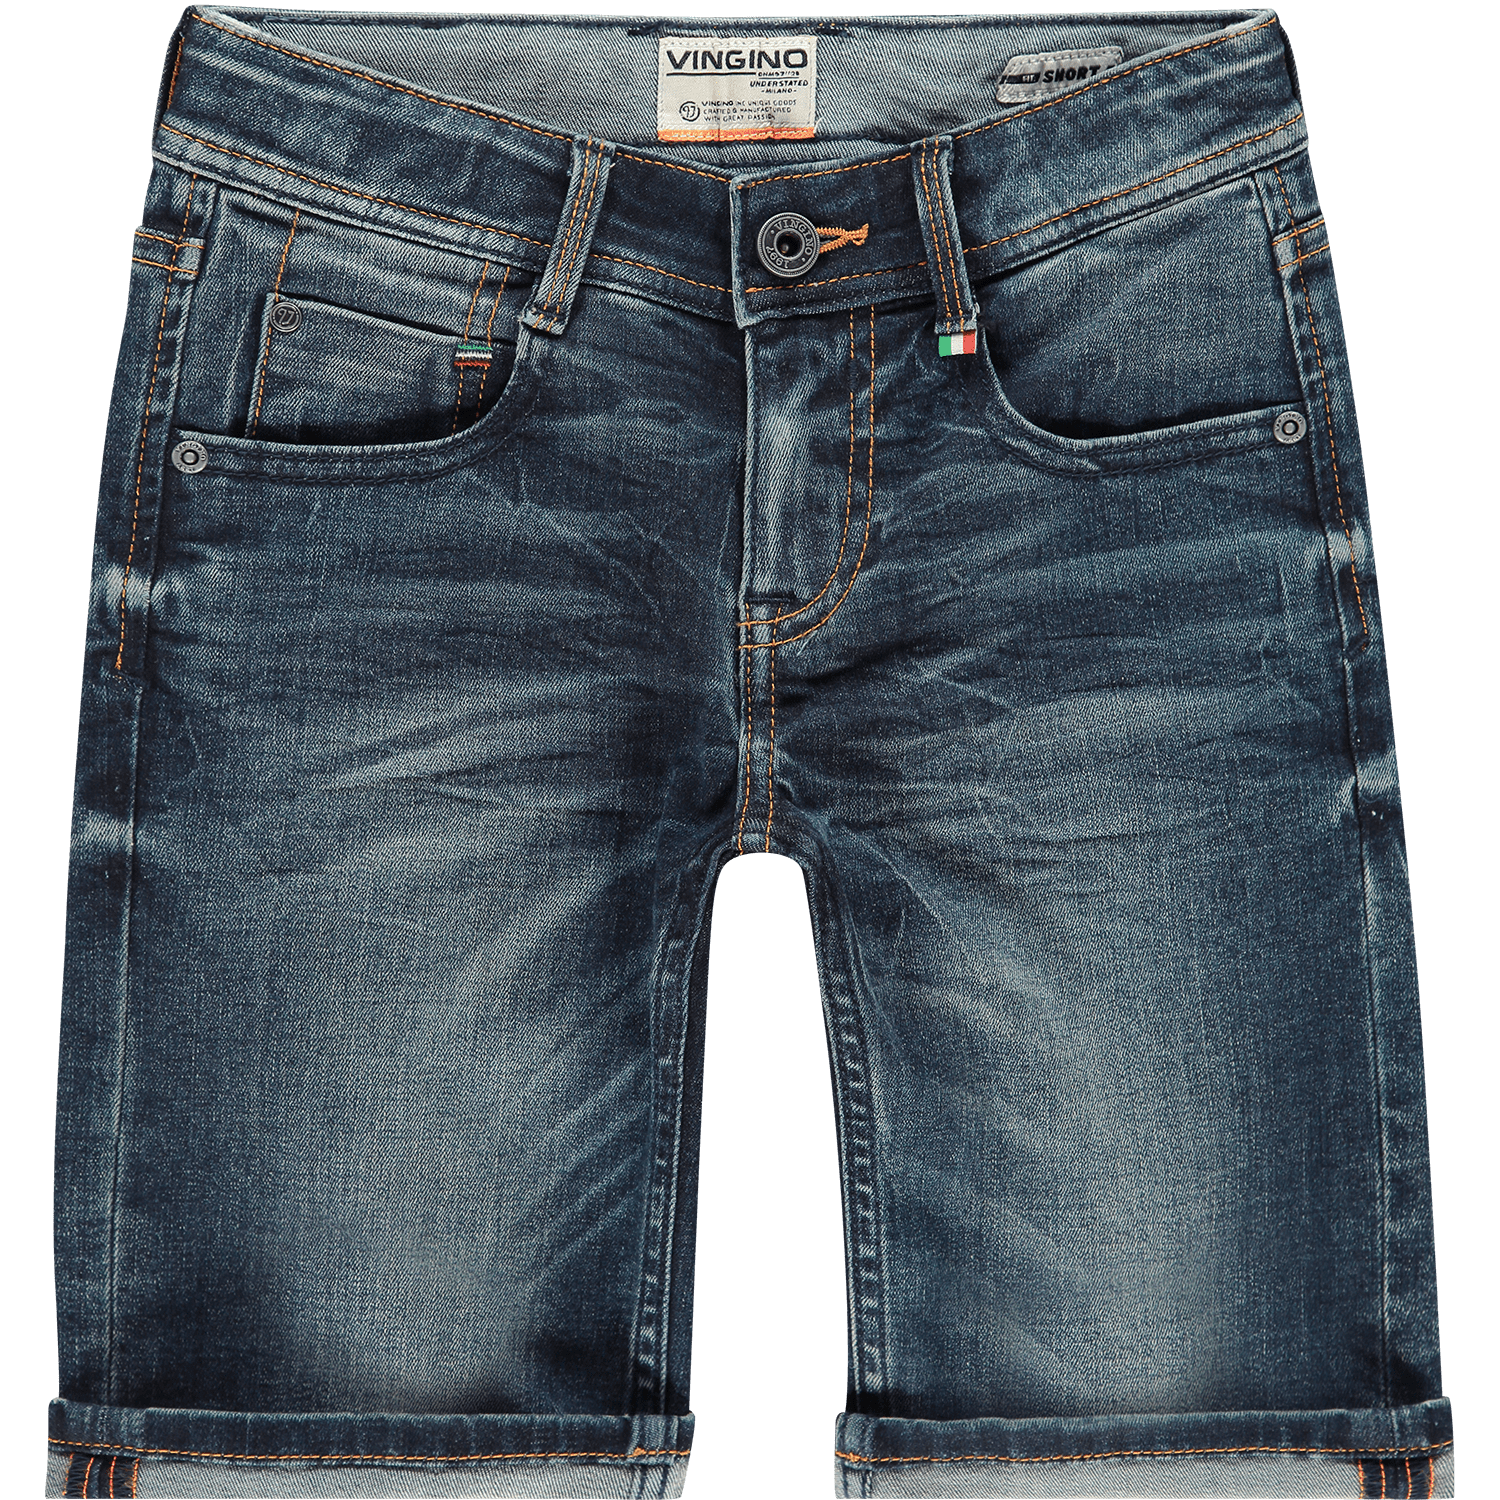 116-170 NEU Sommer 2019 Vingino Jungen Jeans Shorts Cecario Bermuda Gr 